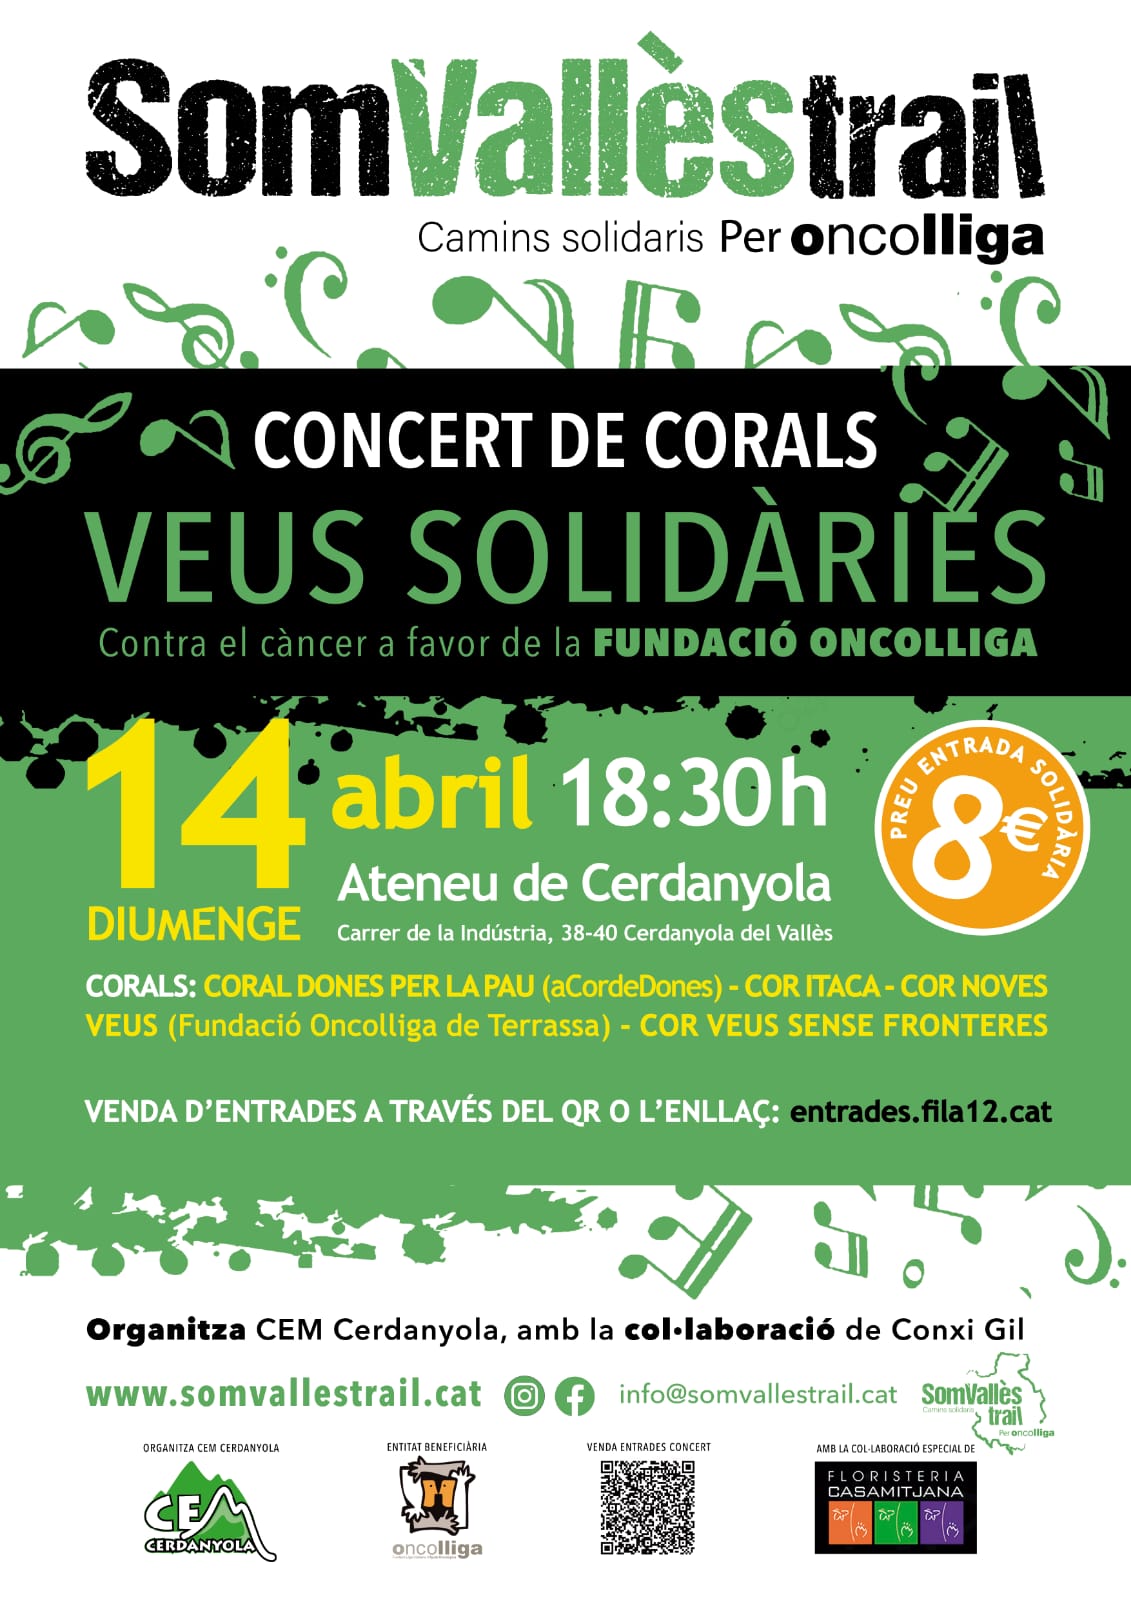 Concert de Corals Veus Solidàries contra el Càncer a favor de la Fundació Oncolliga